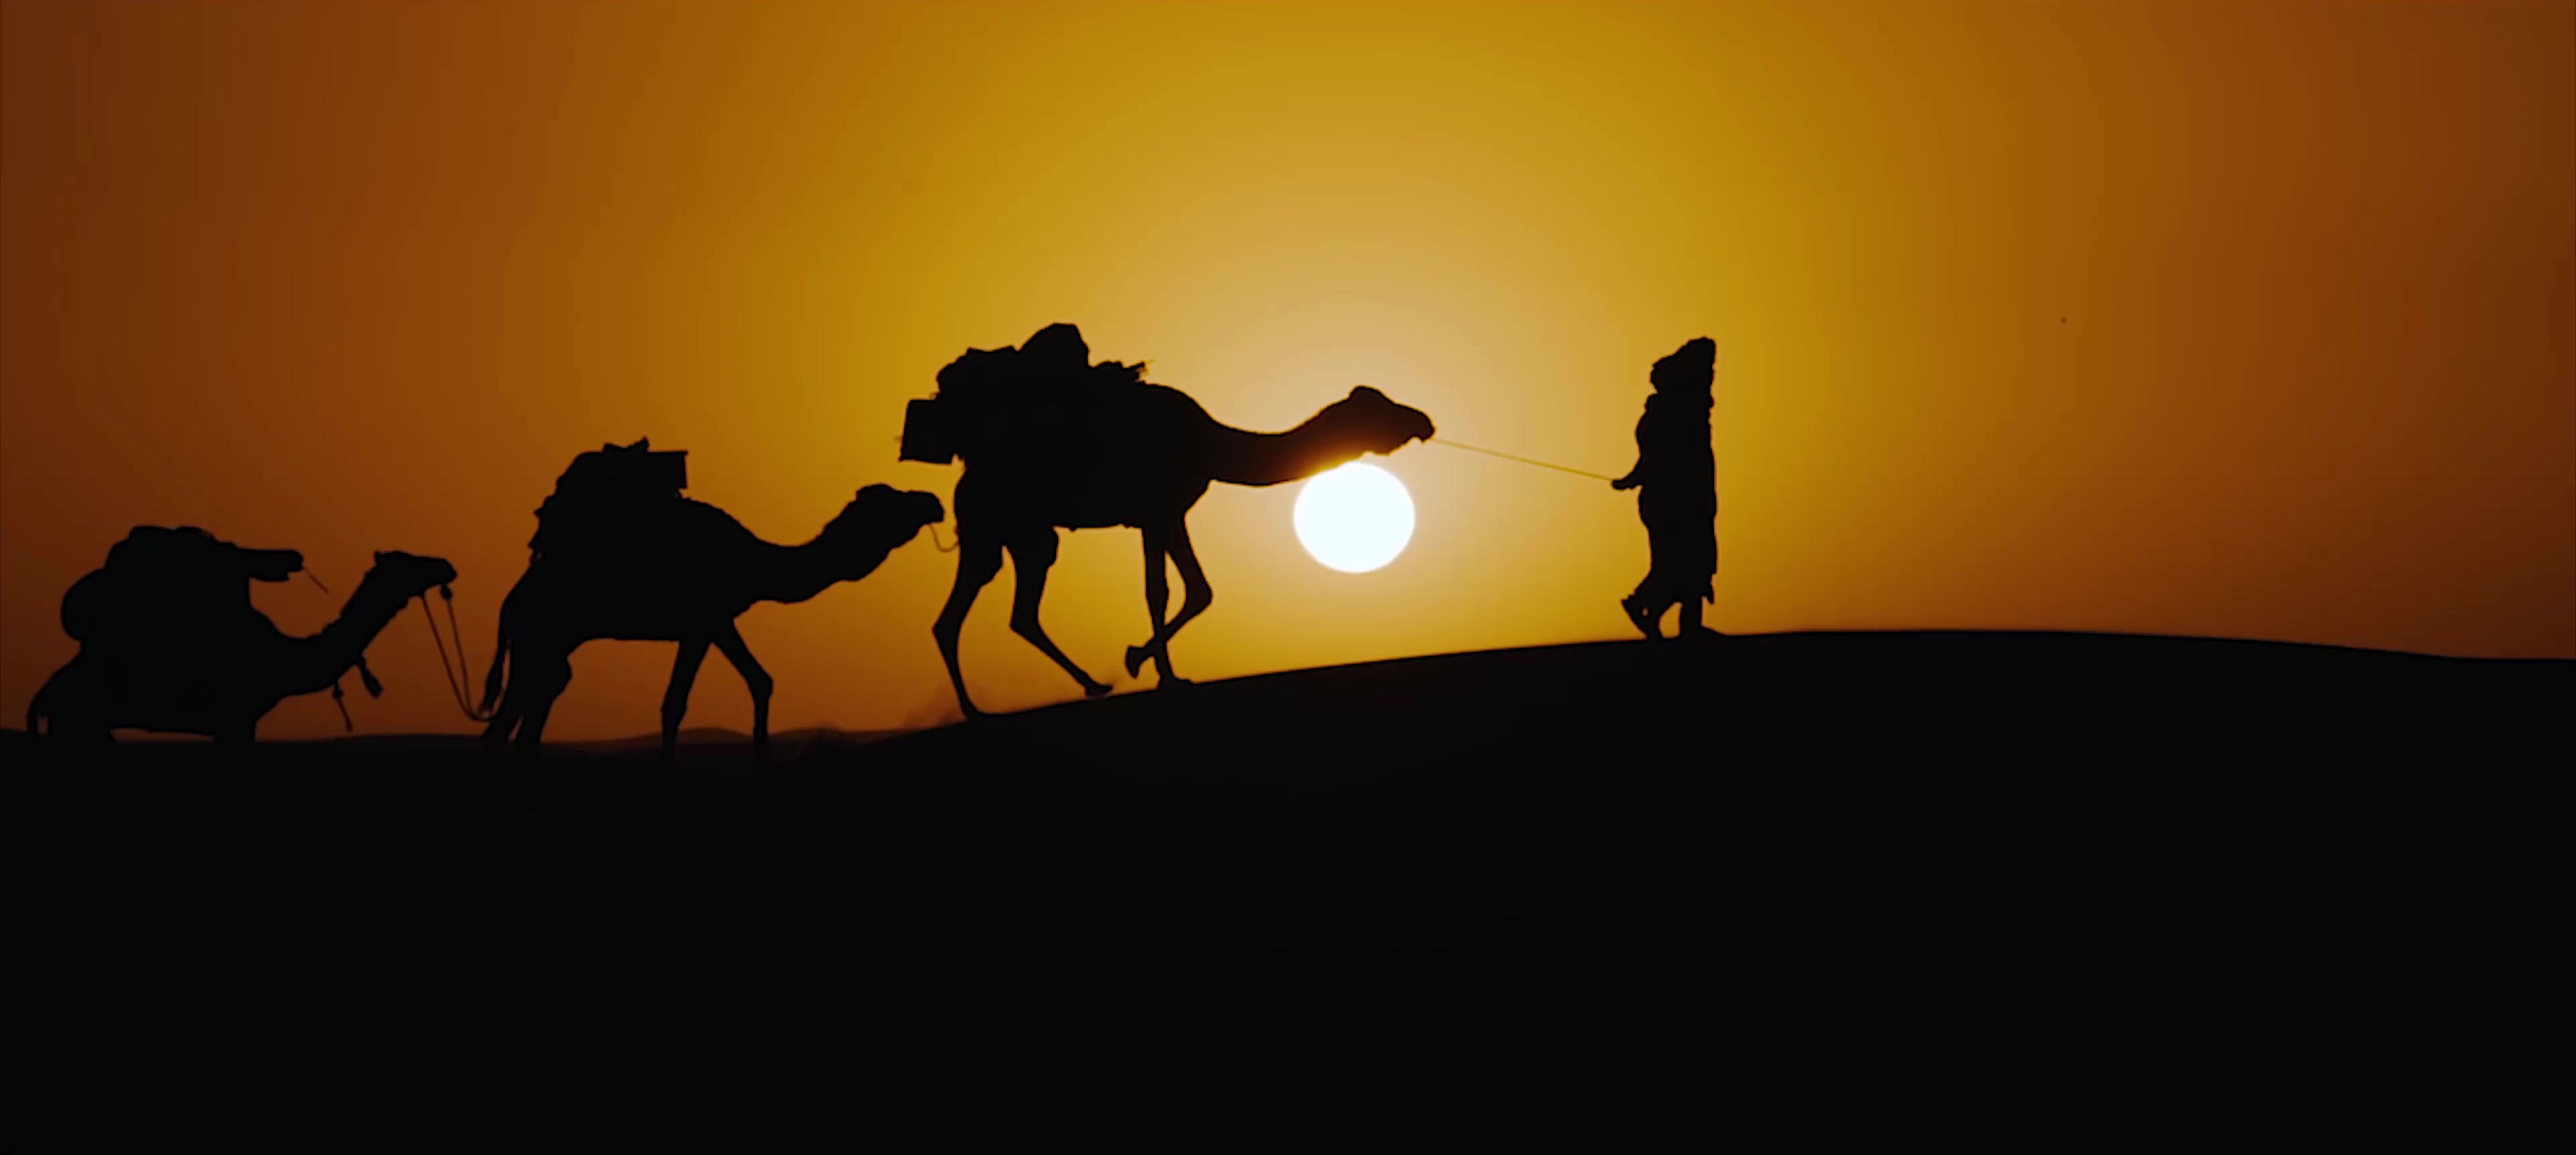 《沙漠骆驼》_图片影展_国际旅游摄影网